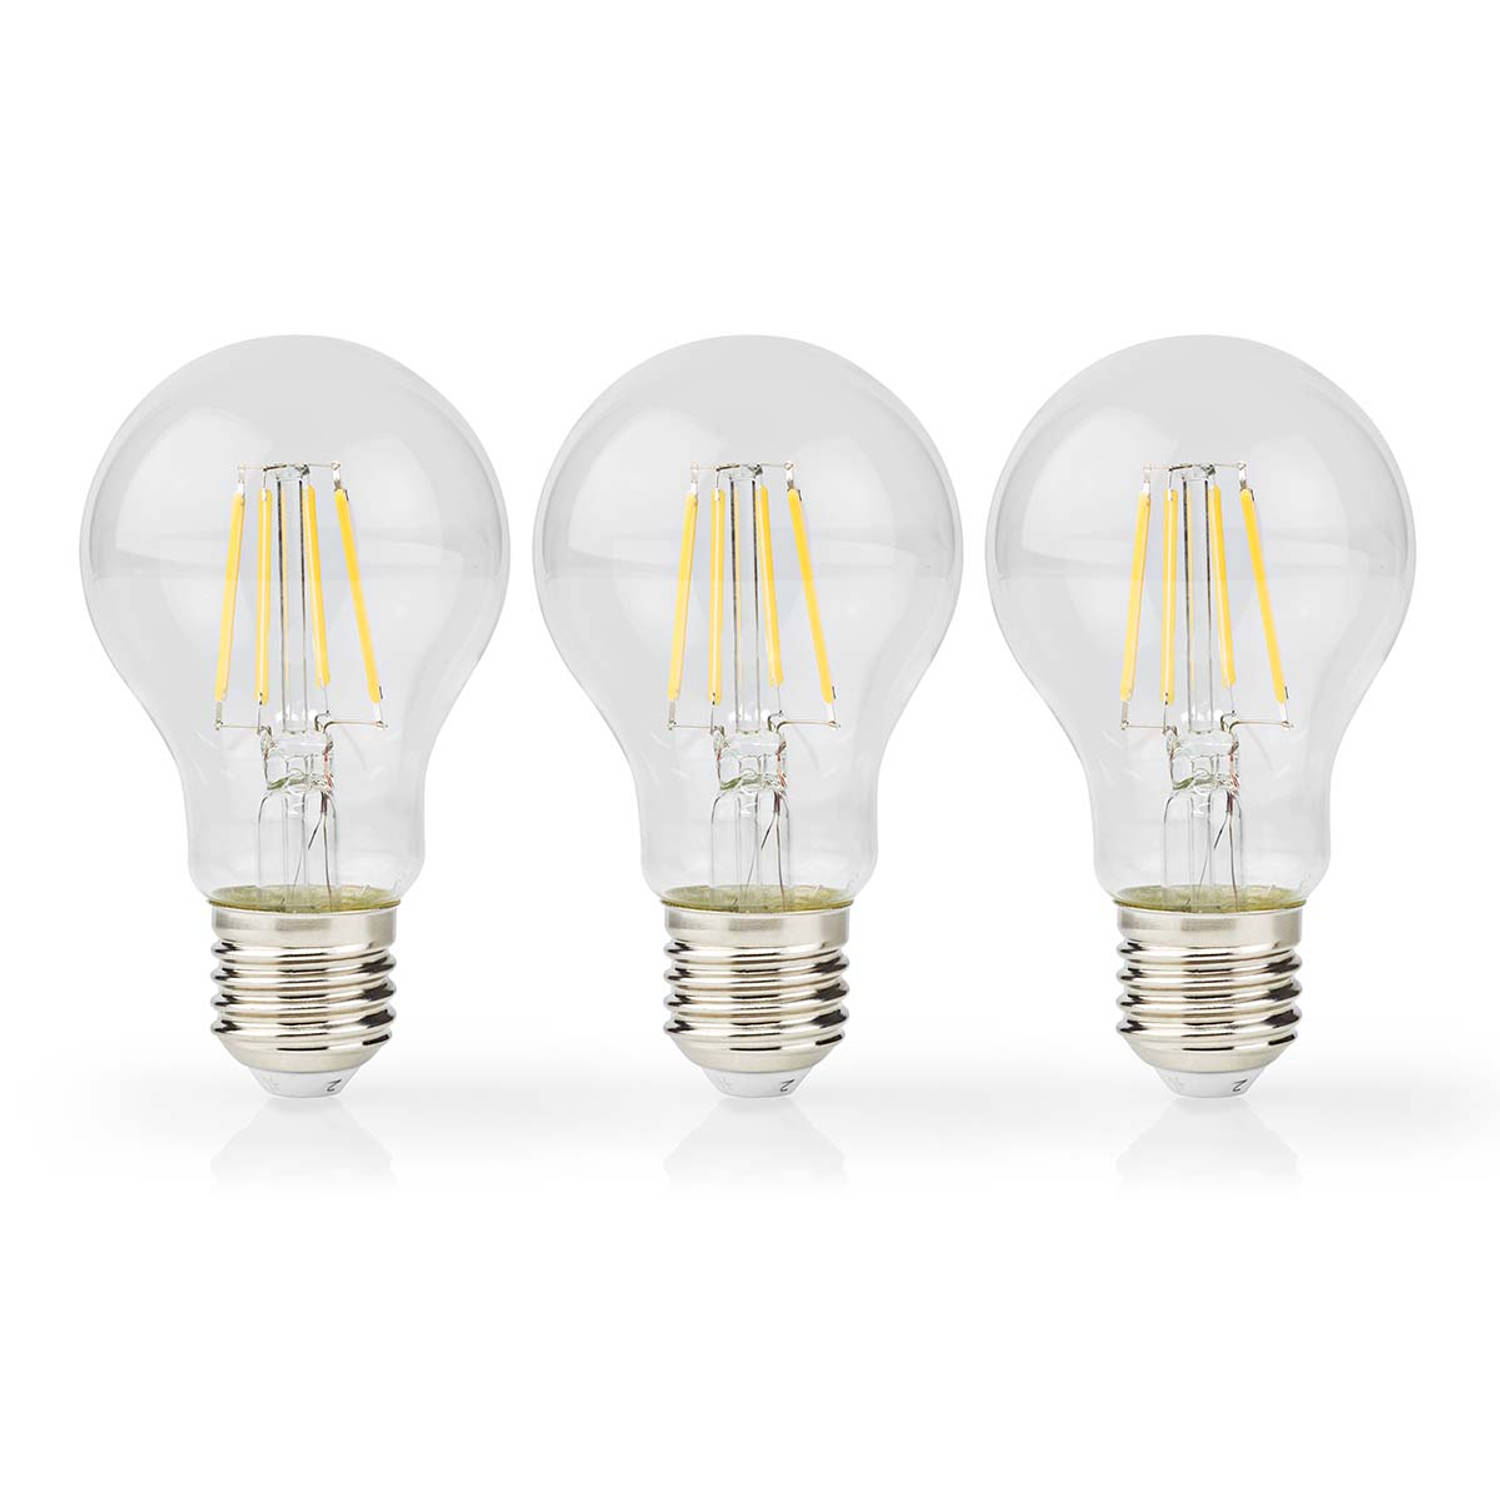 LED-Filamentlamp E27 | A60 | 7 W | 806 lm | 2700 K | 3 stuks | 1 stuks LBFE27A602P3